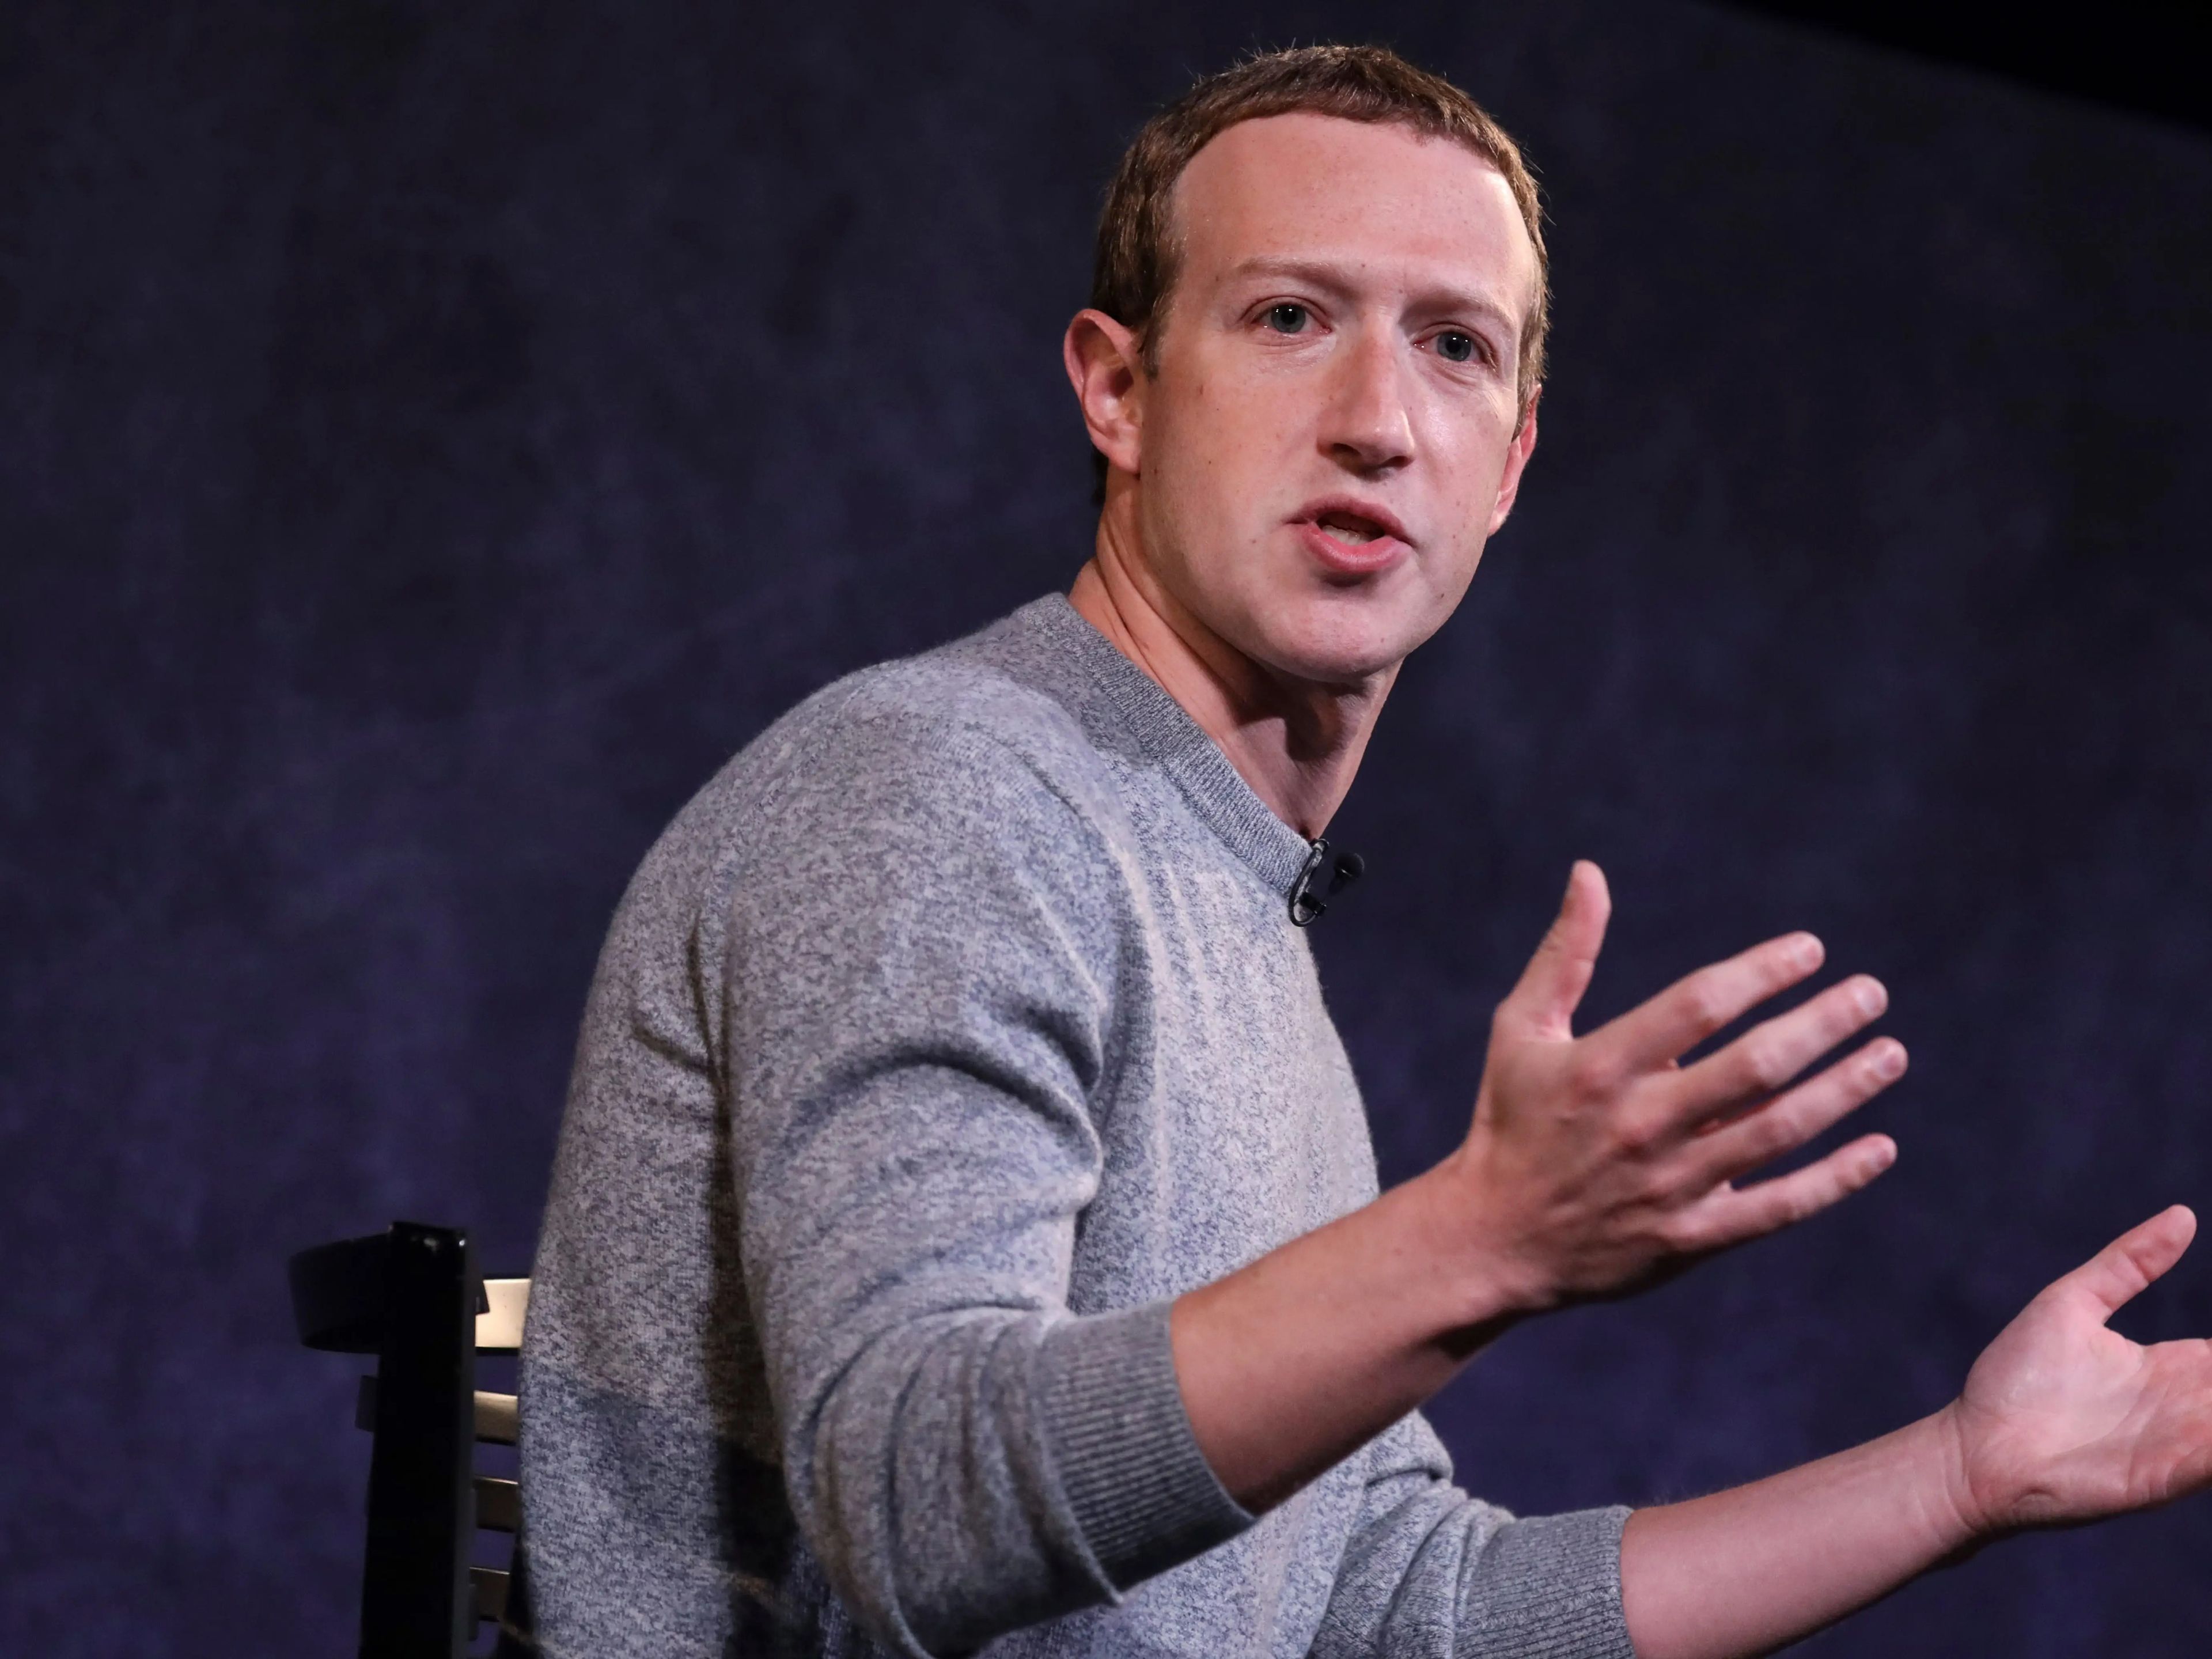 Mark Zuckerberg, CEO de Meta (matriz de Facebook, Instagram y WhatsApp).